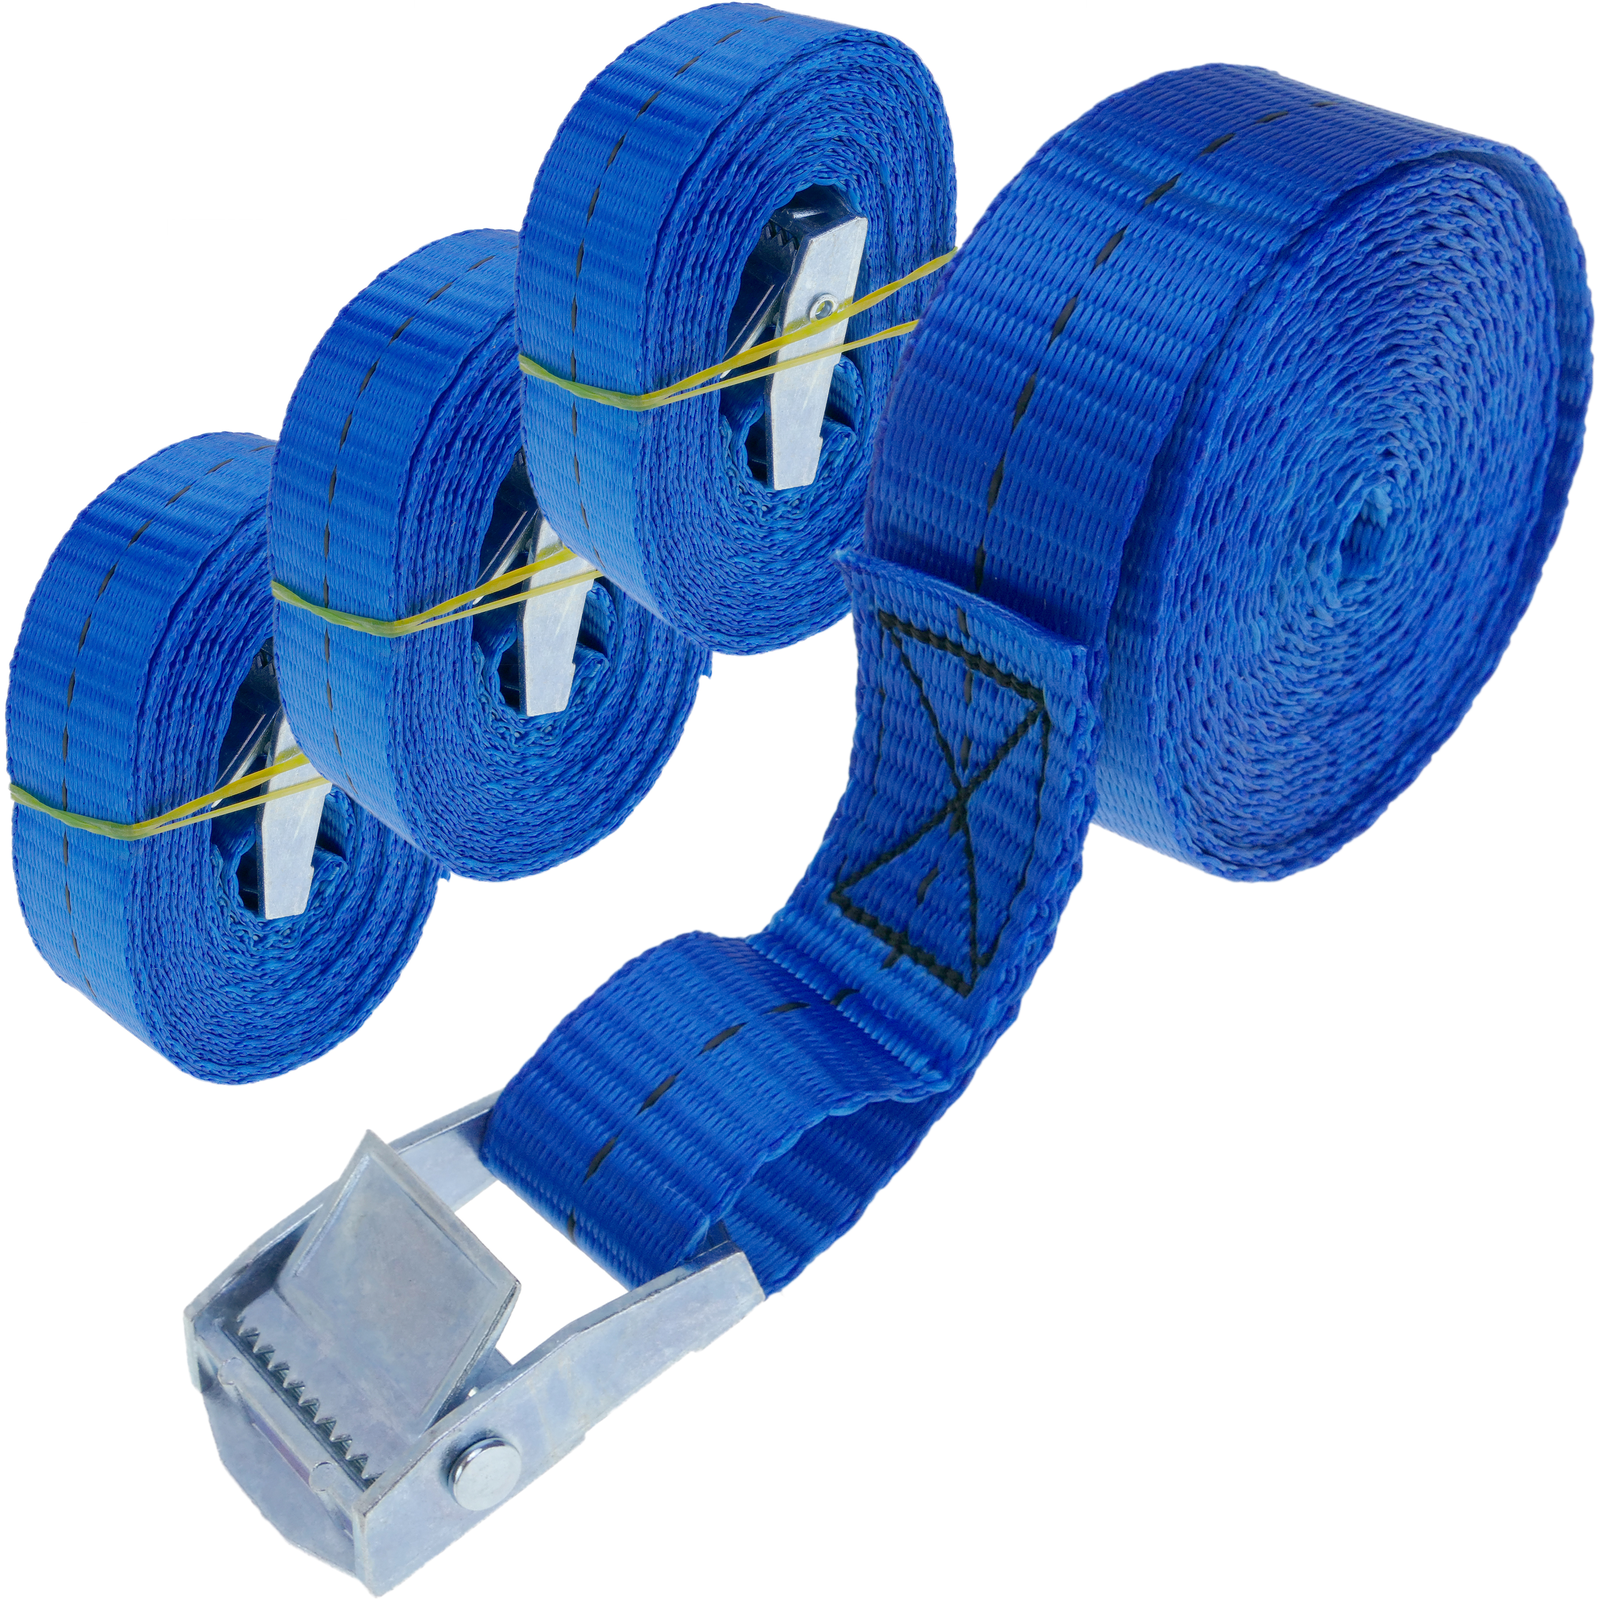 Confezione di 4 cinghie di fissaggio con fibbia 4m x 25mm 250kg, Colore blu  - Cablematic